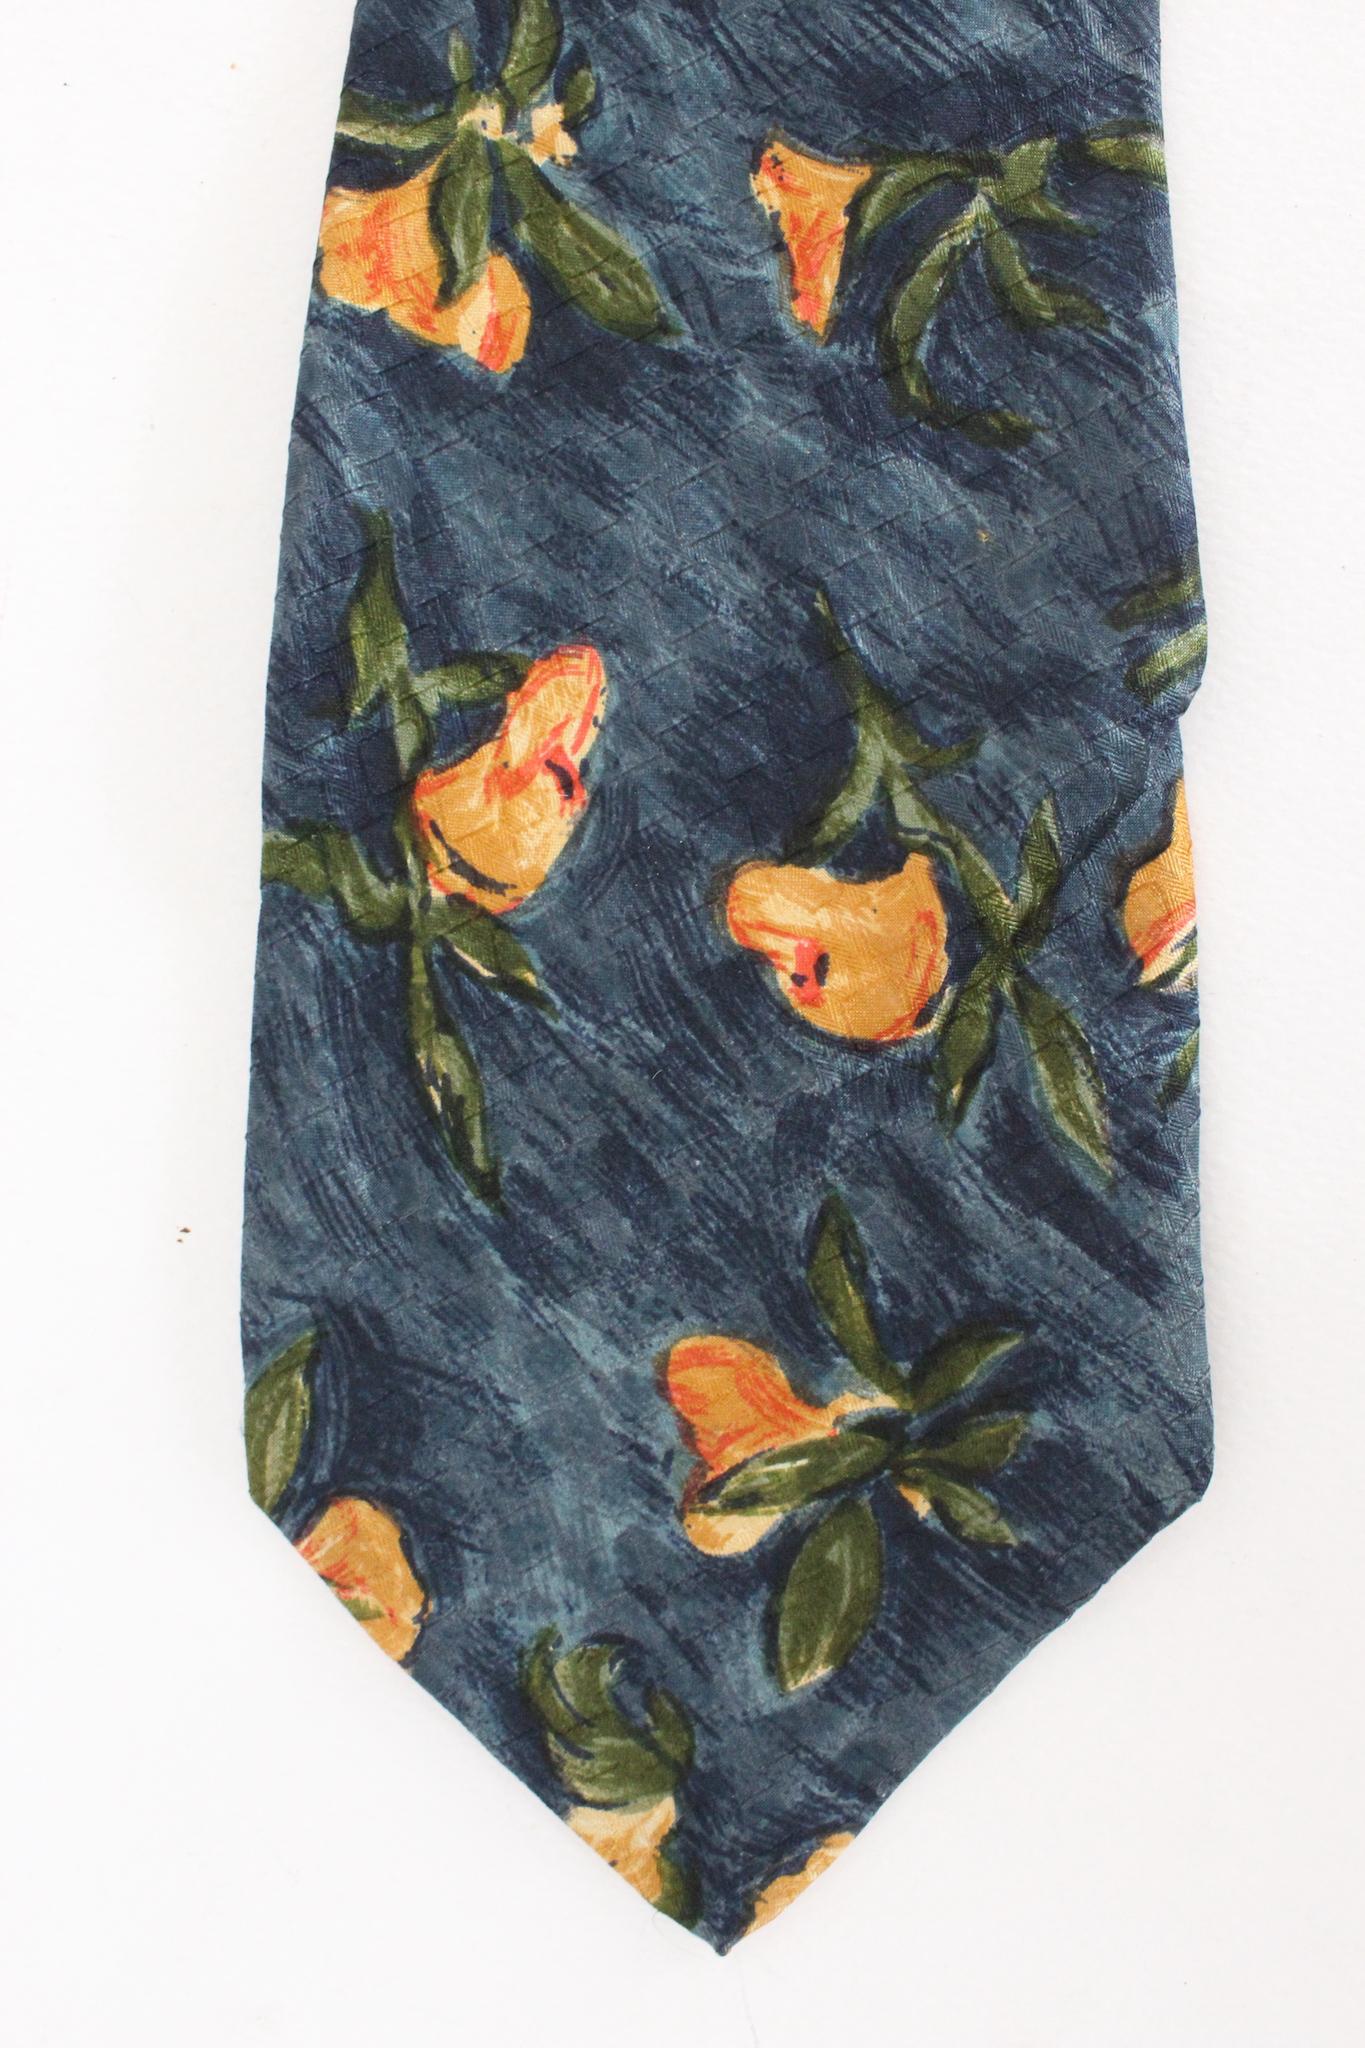 Ungaro Vintage-Krawatte mit Blumenmuster aus den 90ern. Blaue Farbe mit orangefarbenem Blumenmuster, 100% Seide. Hergestellt in Frankreich.

Länge: 149 cm
Breite: 10 cm